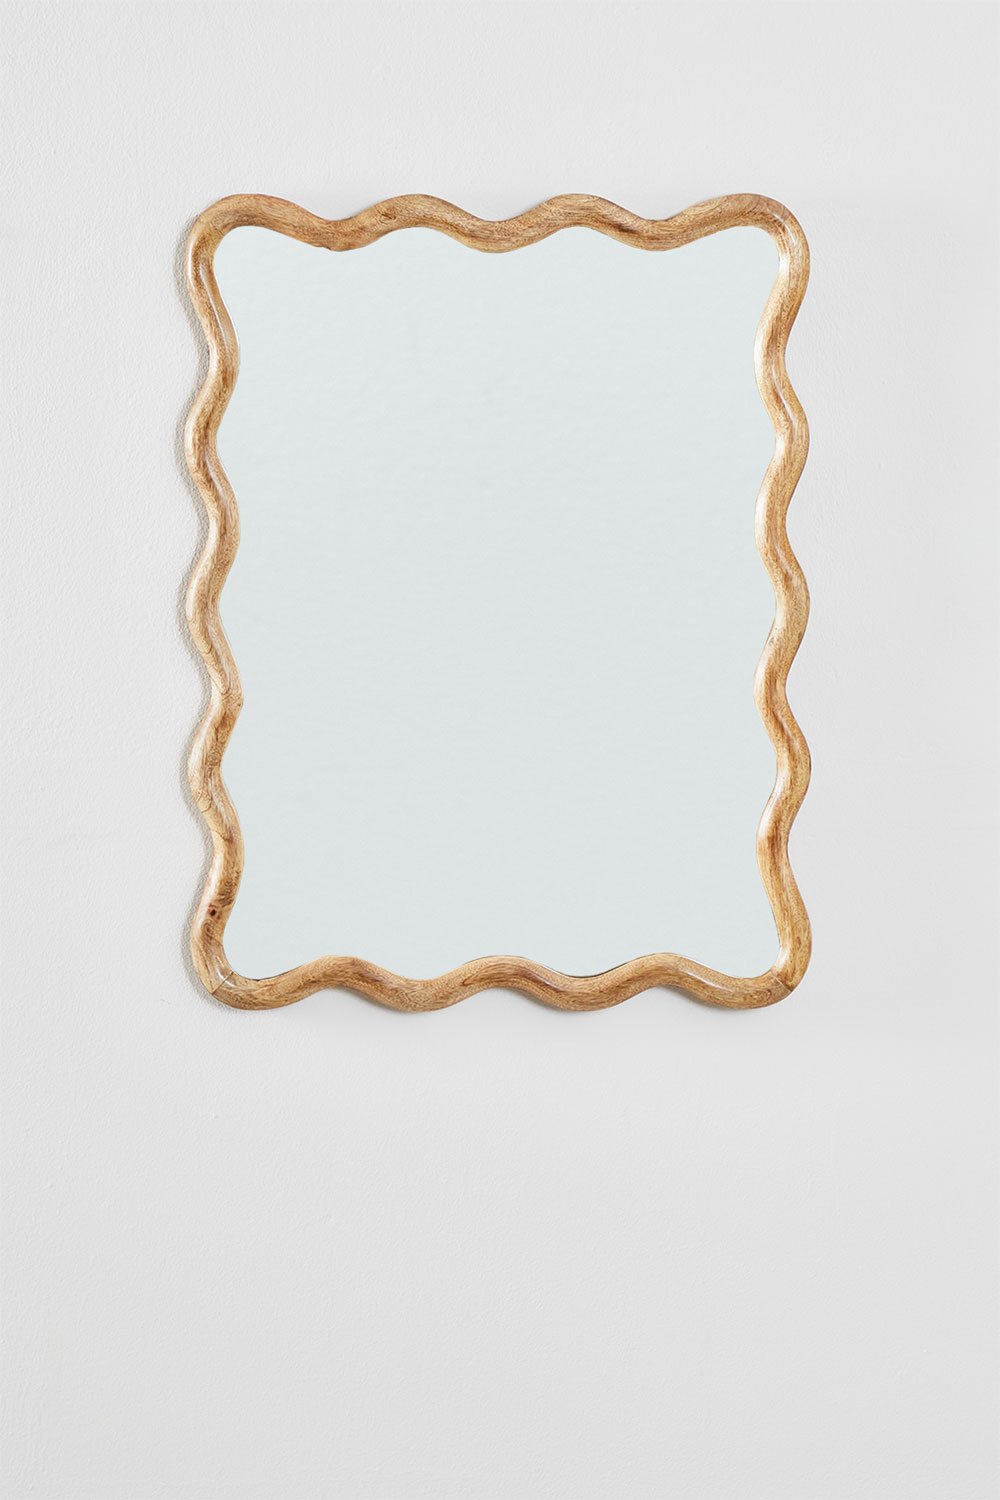 Specchio da parete rettangolare in legno di mango (48x62 cm) Gilliam, immagine della galleria 2